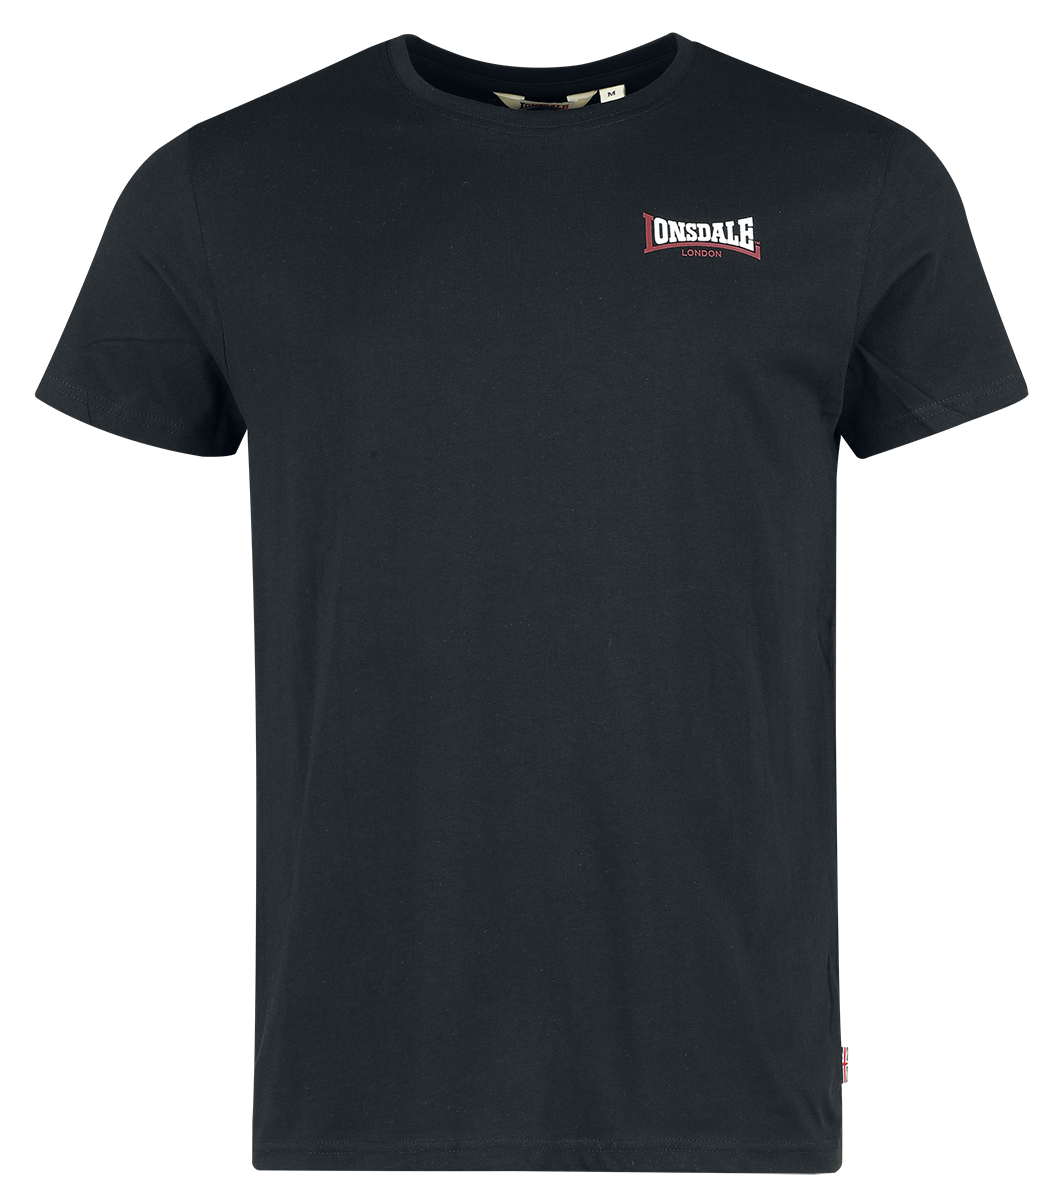 Lonsdale London - DALE - T-Shirt - schwarz